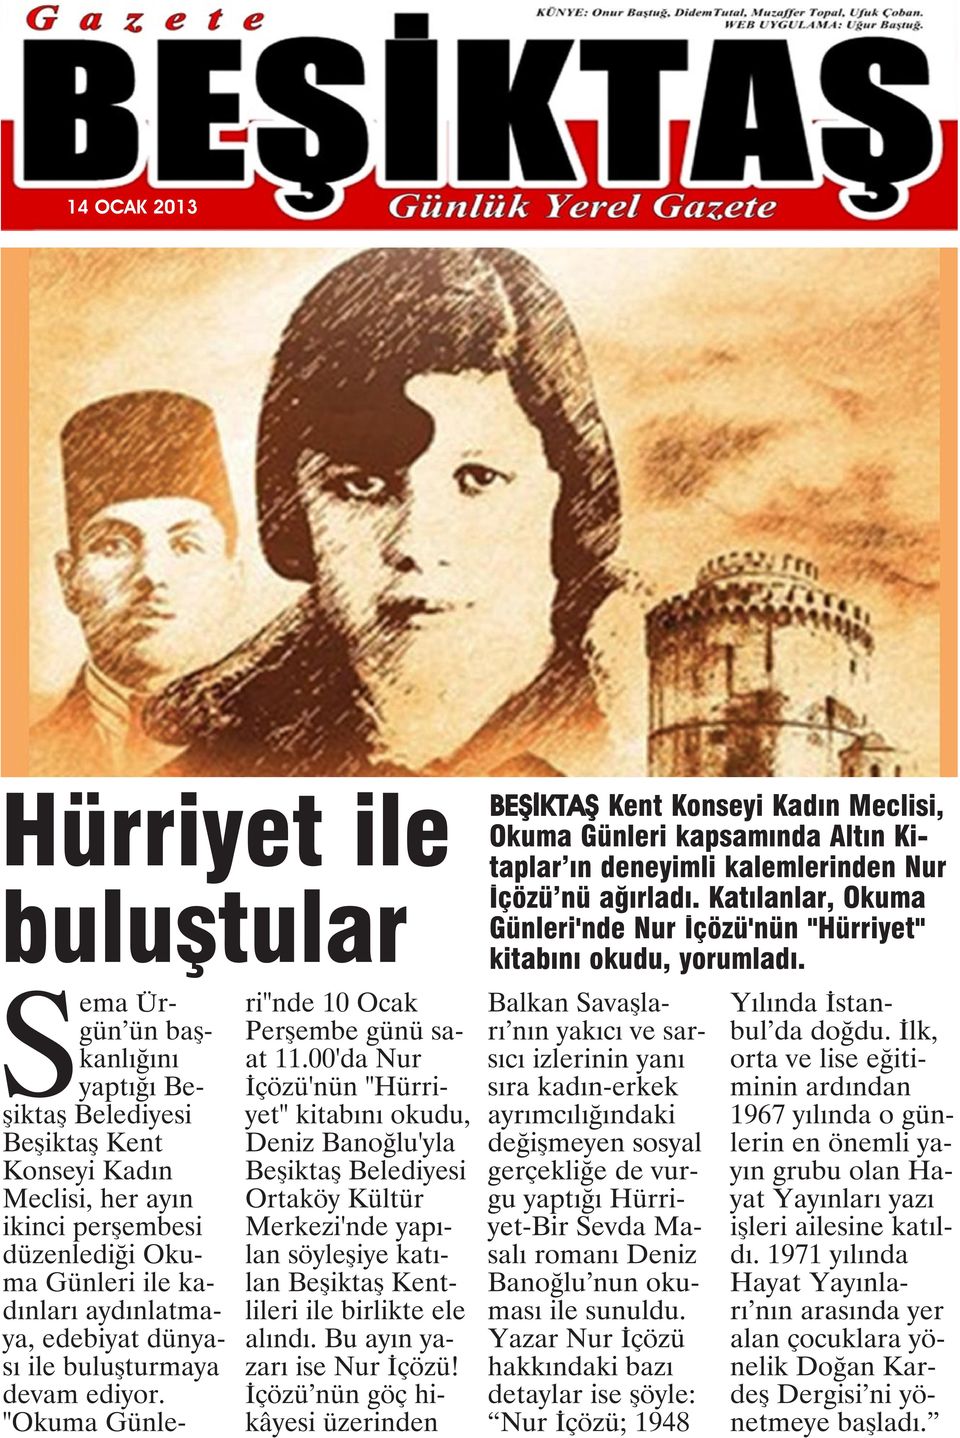 00'da Nur İçözü'nün "Hürriyet" kitabını okudu, Deniz Banoğlu'yla Beşiktaş Belediyesi Ortaköy Kültür Merkezi'nde yapılan söyleşiye katılan Beşiktaş Kentlileri ile birlikte ele alındı.